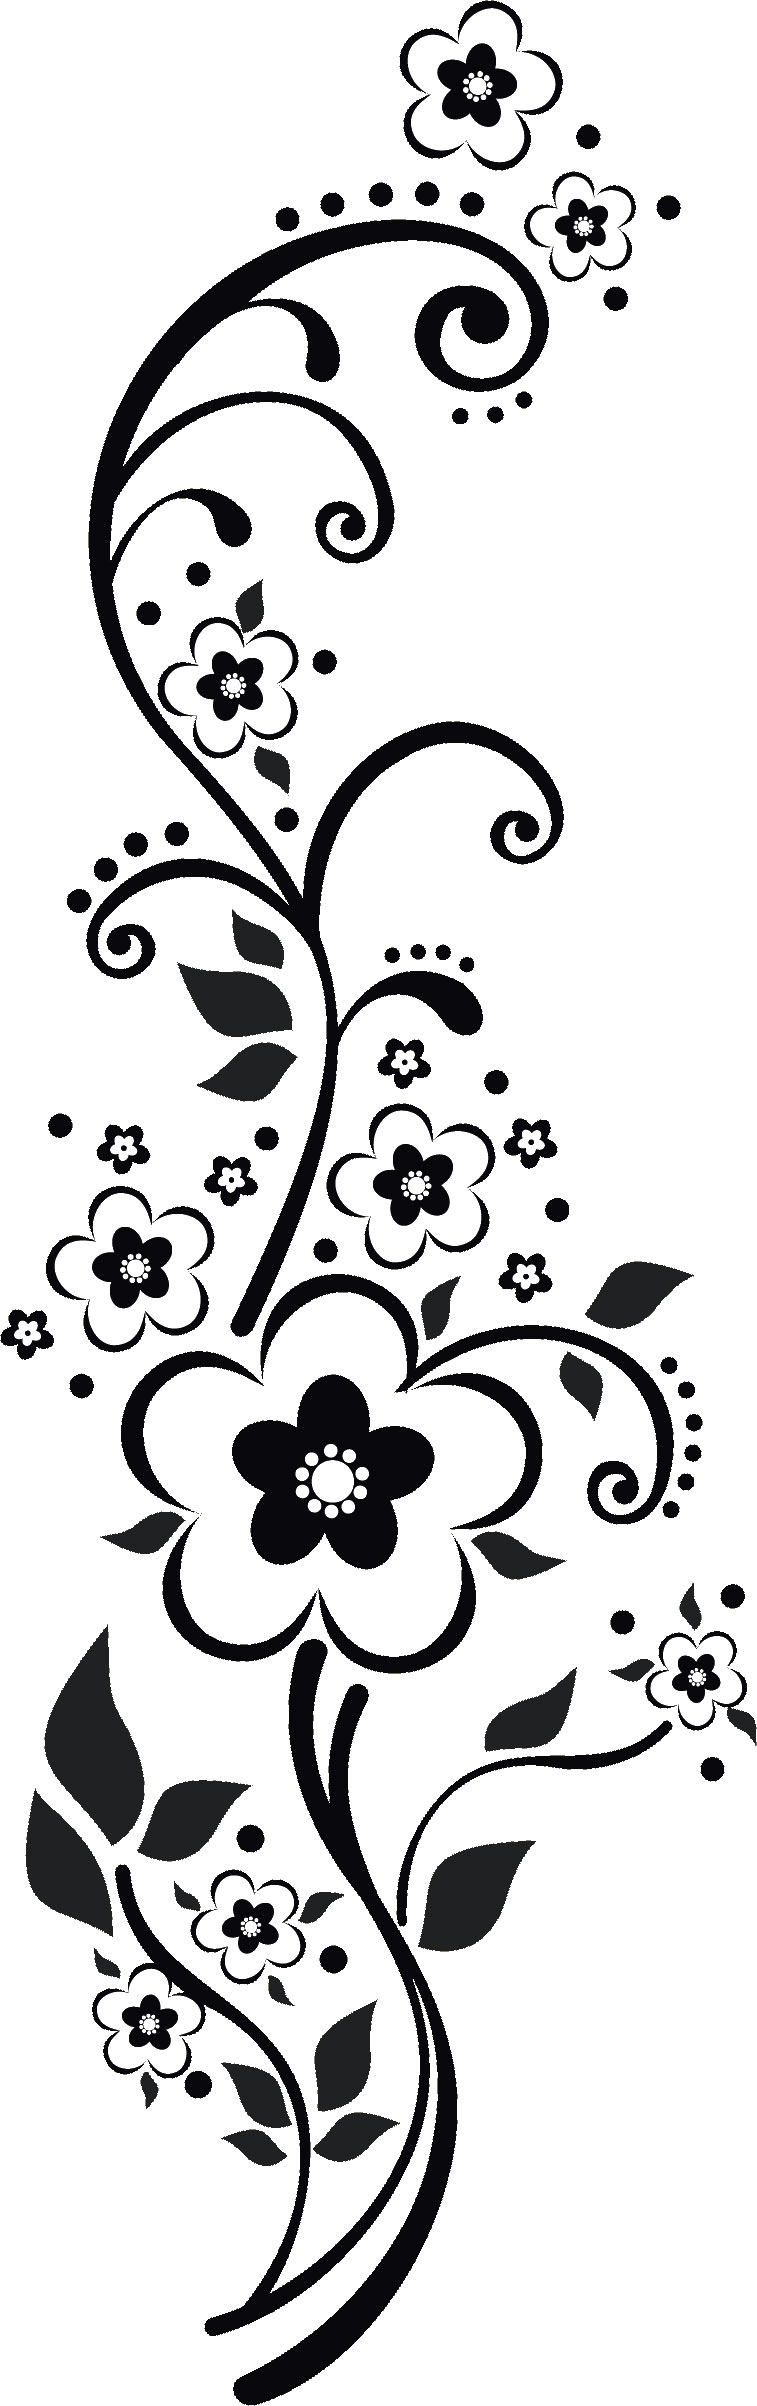 花のイラスト フリー素材 フレーム枠no 301 白黒 茎葉 縦長